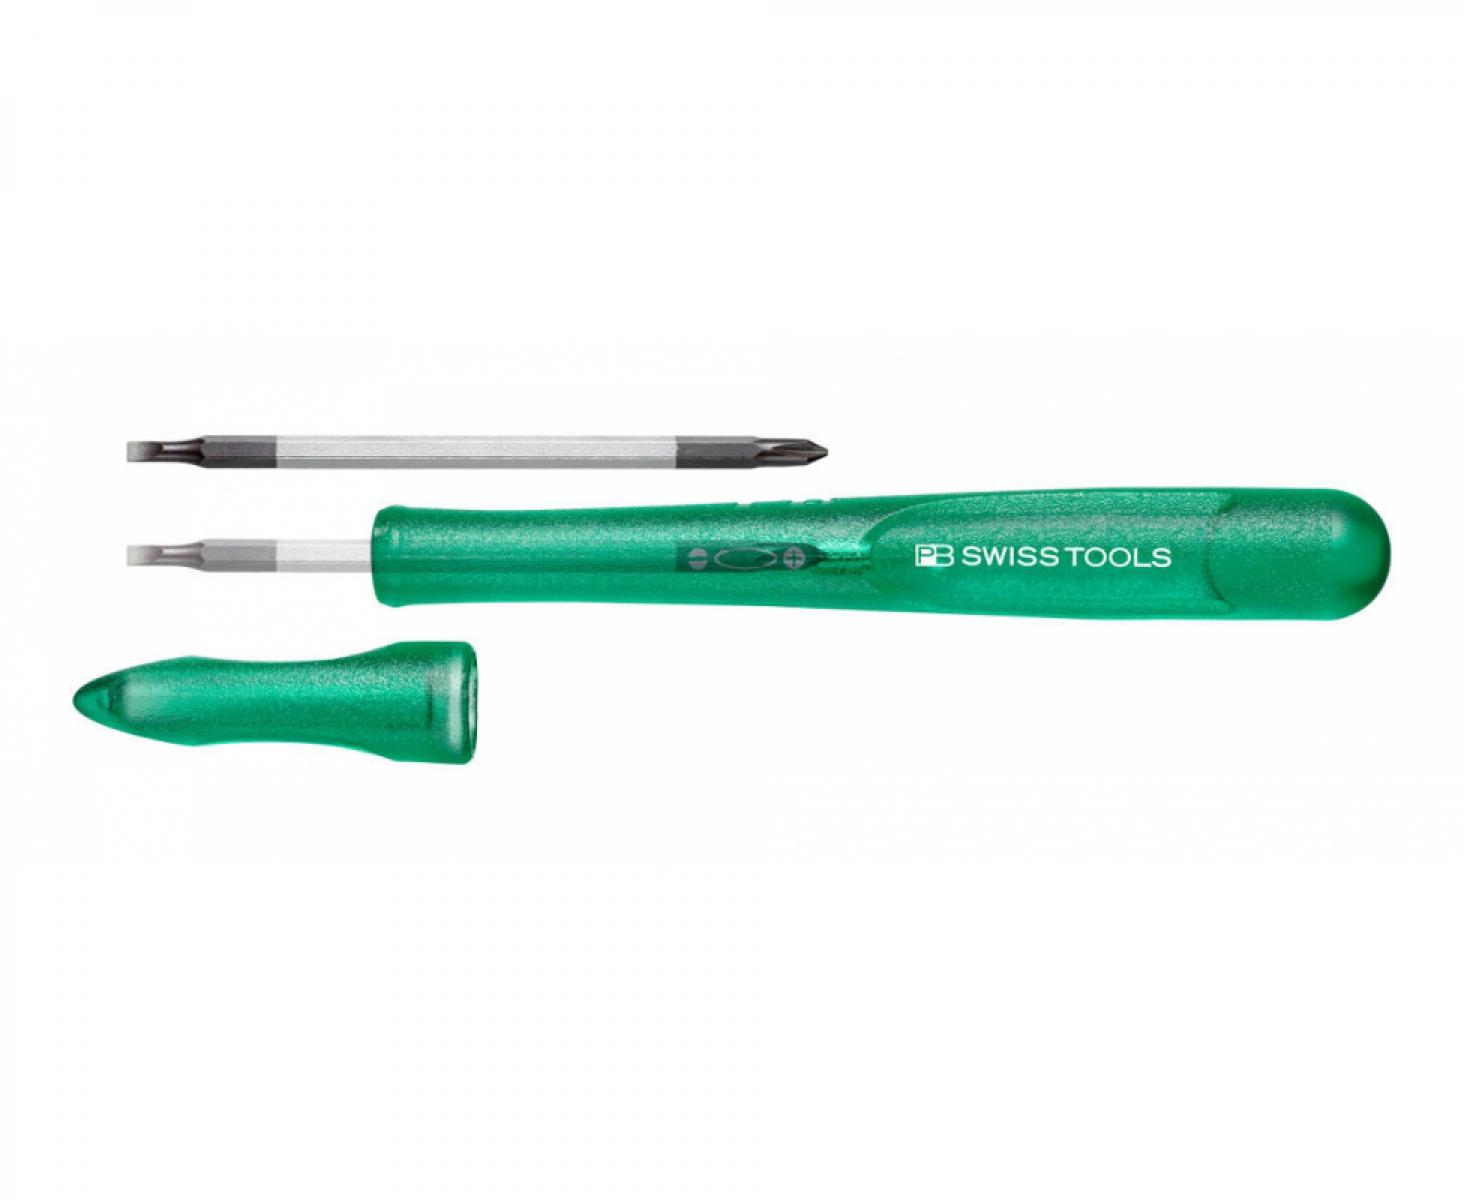 Отвертка прецизионная прецизионная PB Swiss Tools со сменным жалом SL PH PB 168.00-30 GR зеленая